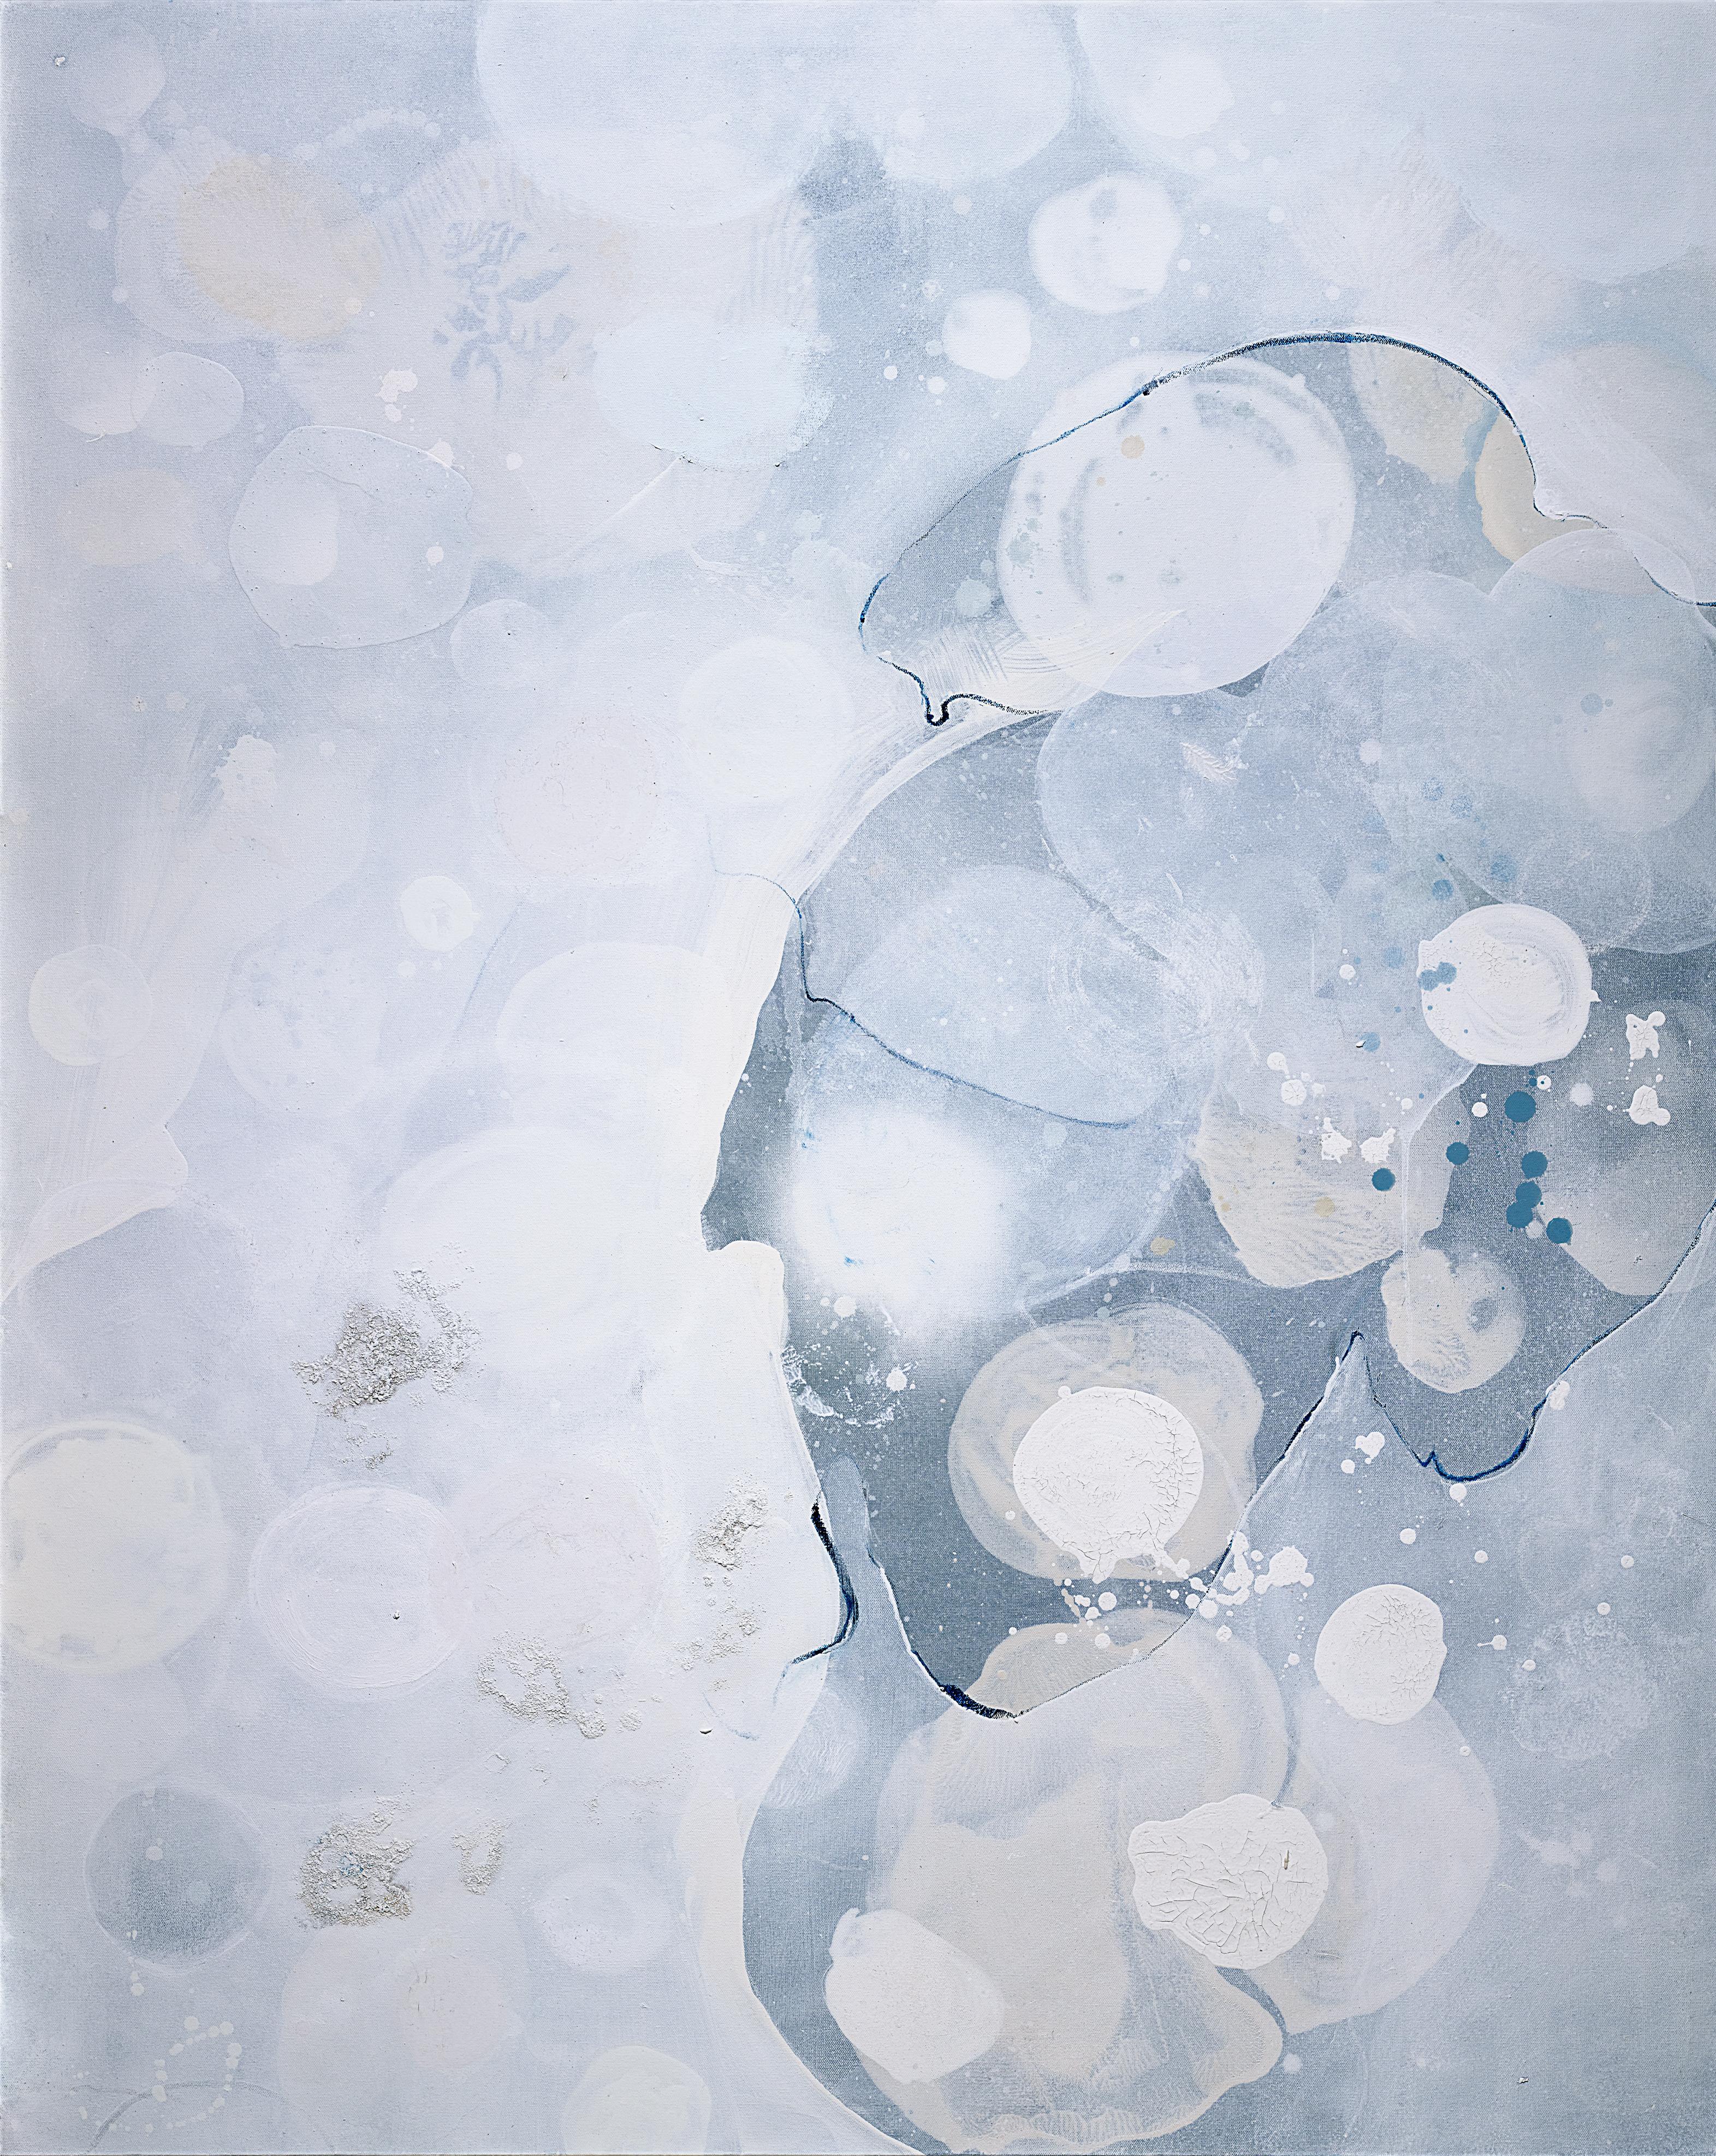 Leuchte auf Wasser – Mixed Media Art von Joanna Cutri